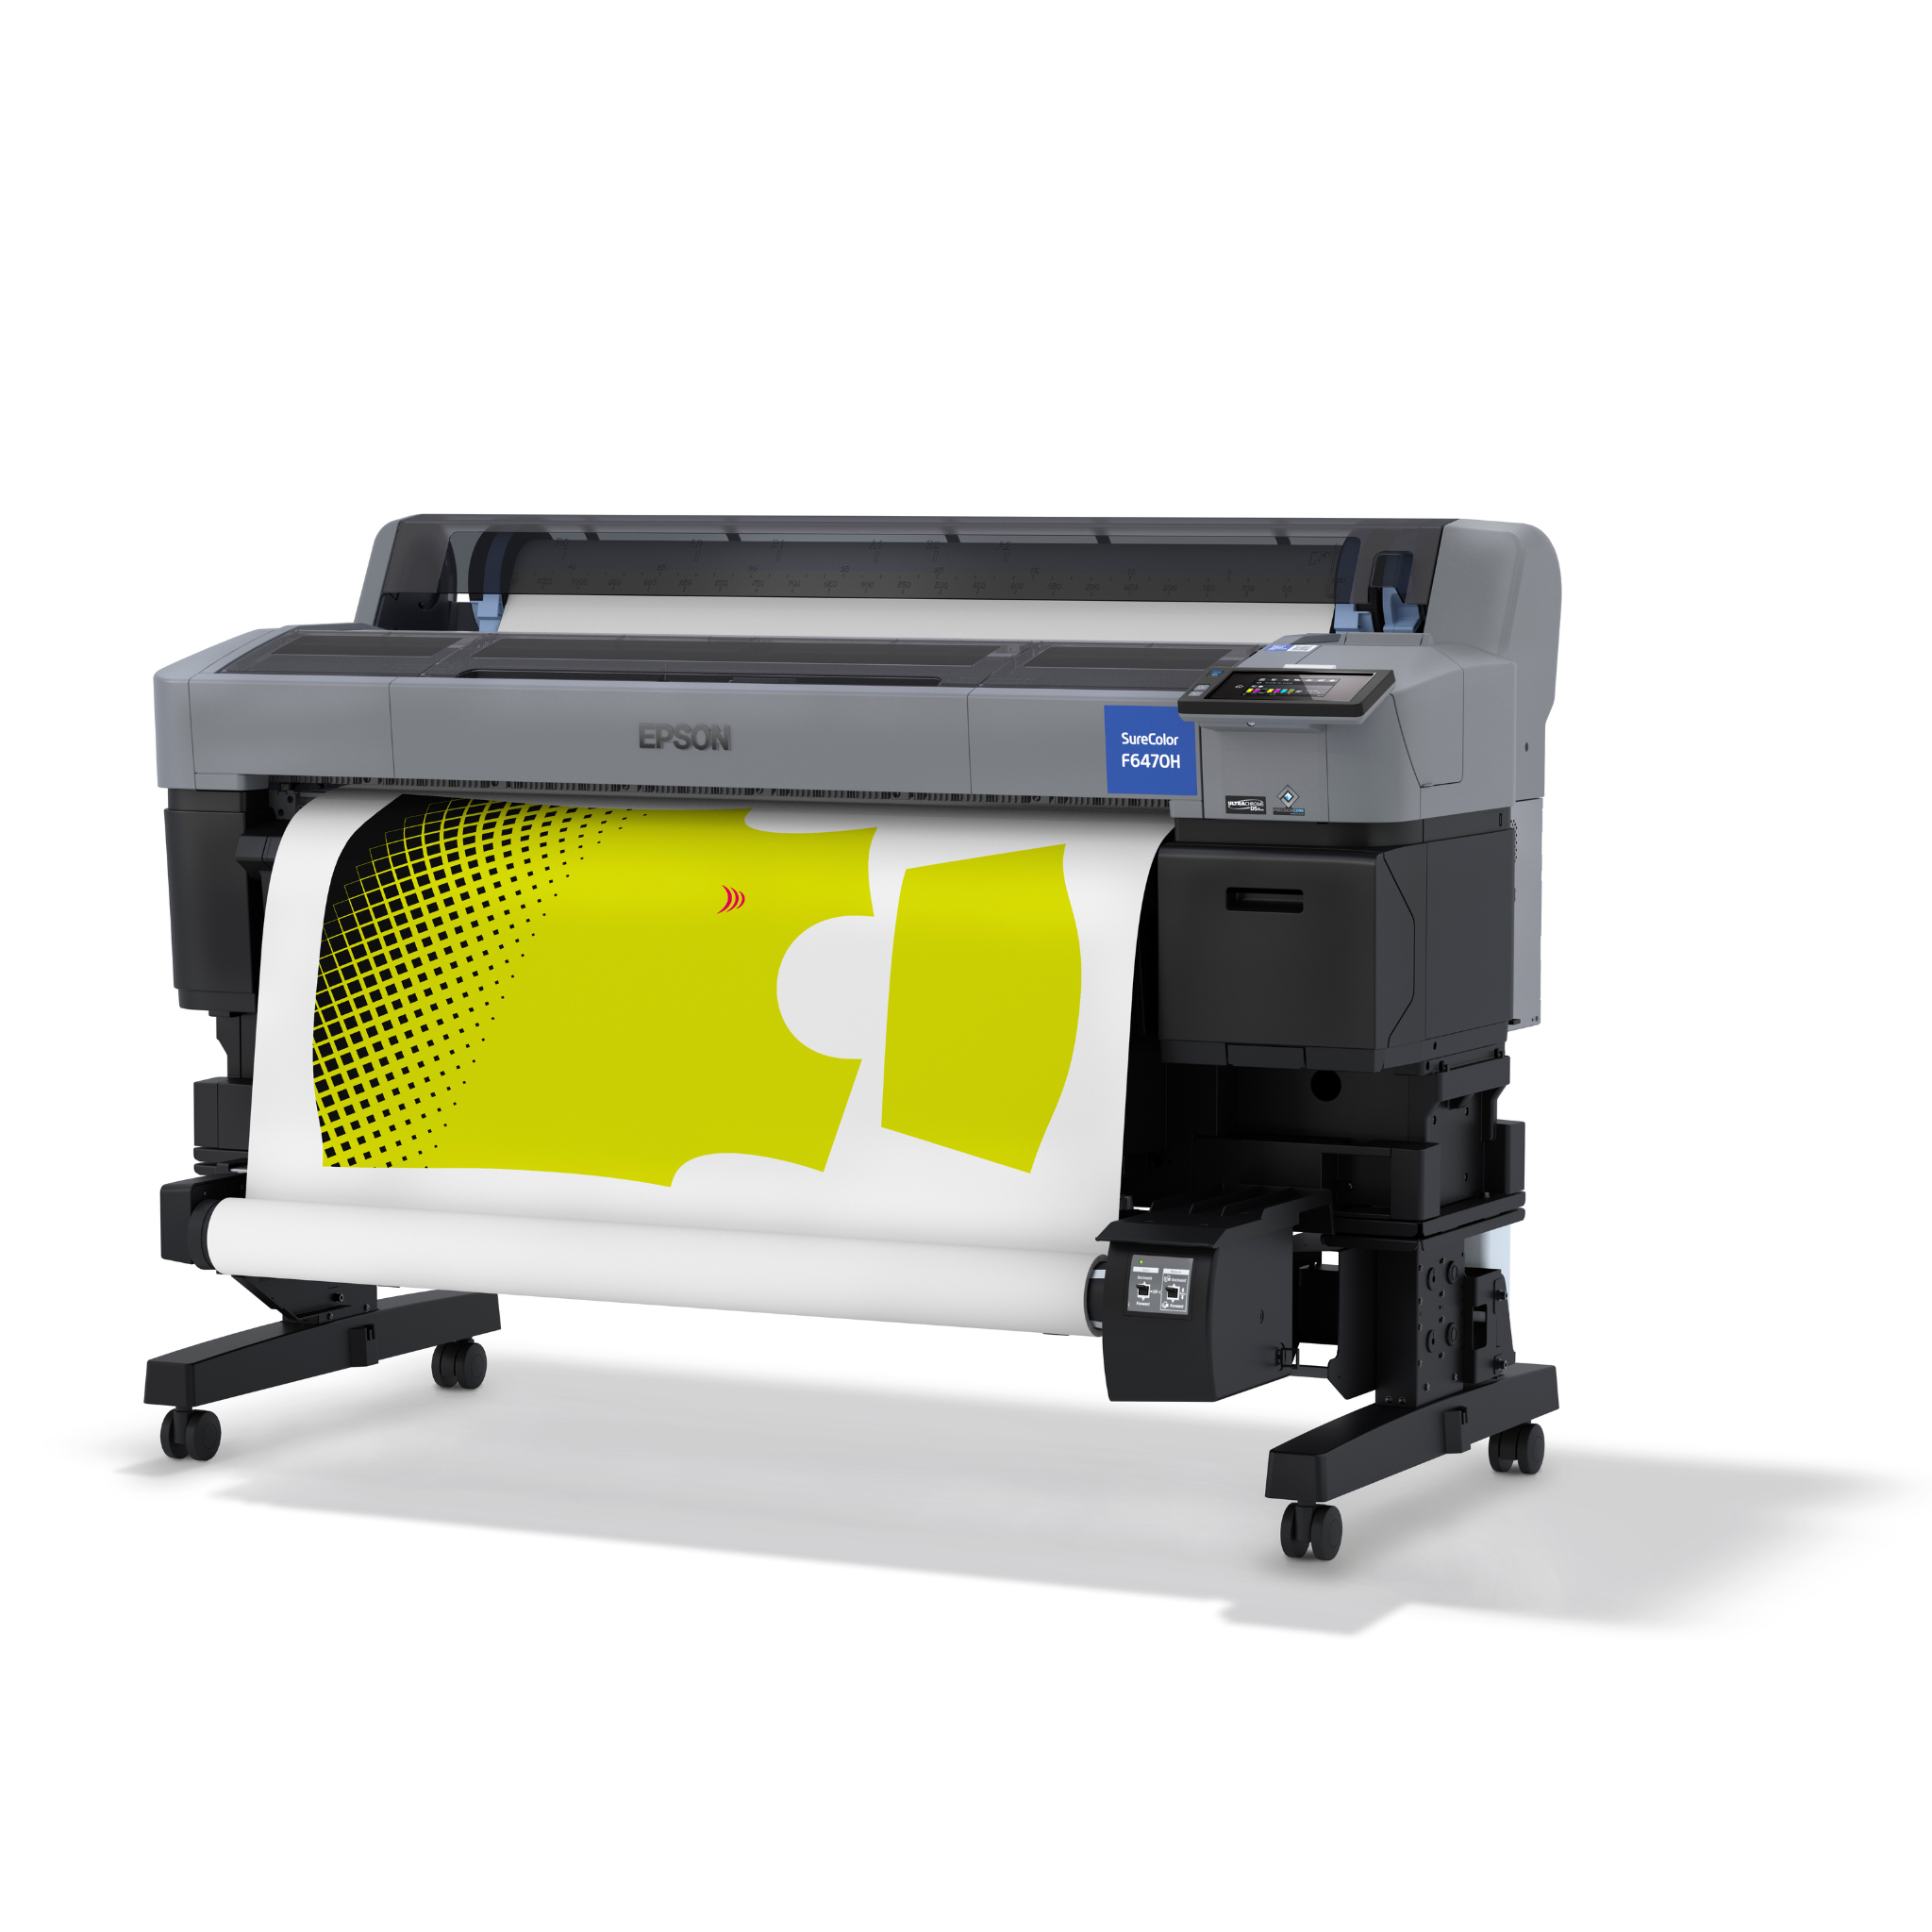 Epson SureColor F6470 Series Dye-Sublimation Printer